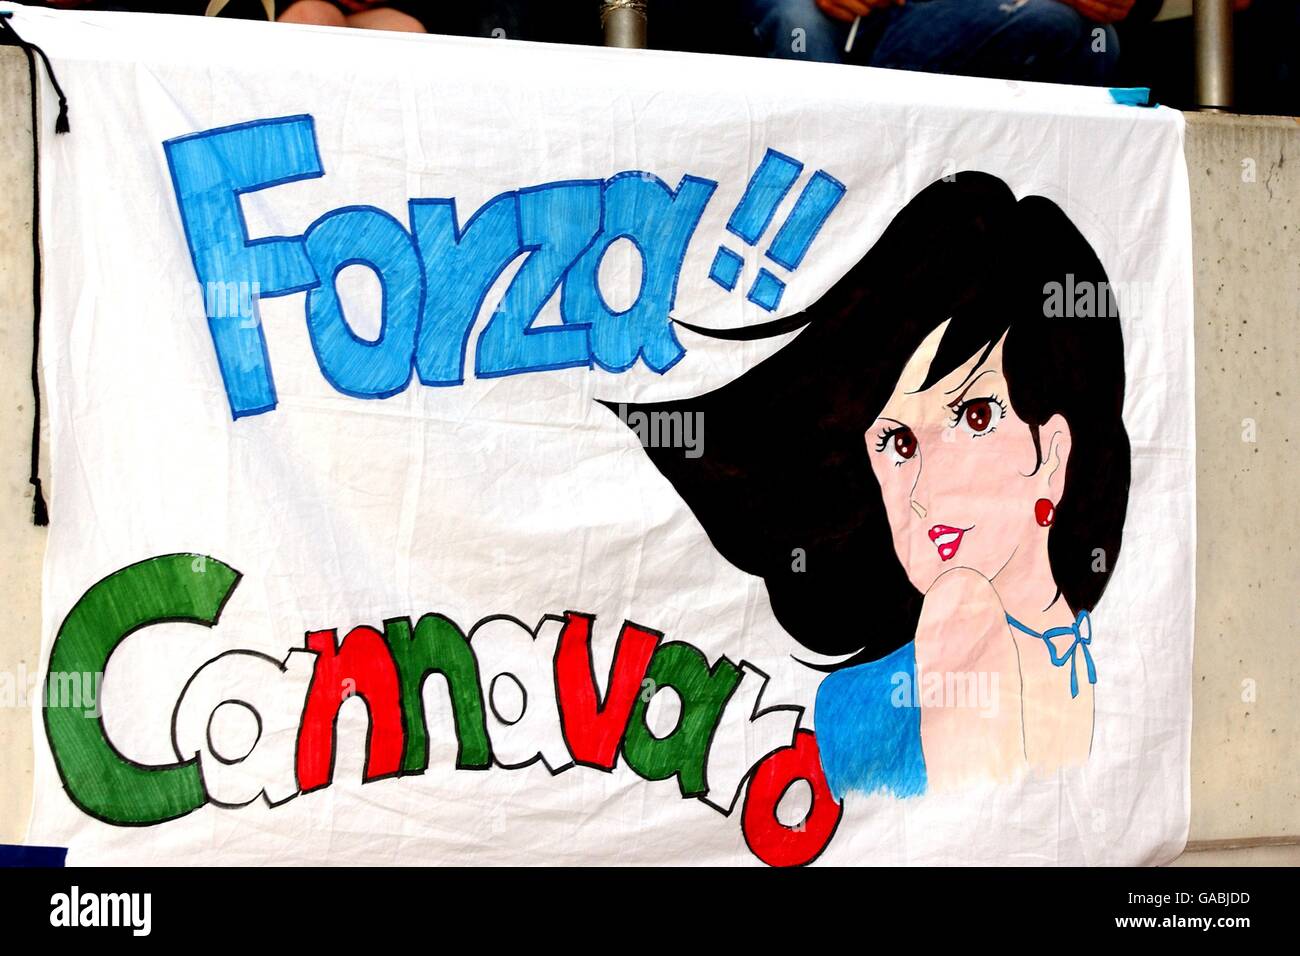 Football - coupe du monde de la FIFA 2002 - Groupe G - Italie / Croatie.Un fan italien espère attirer l'attention de Fabio Cannavaro Banque D'Images